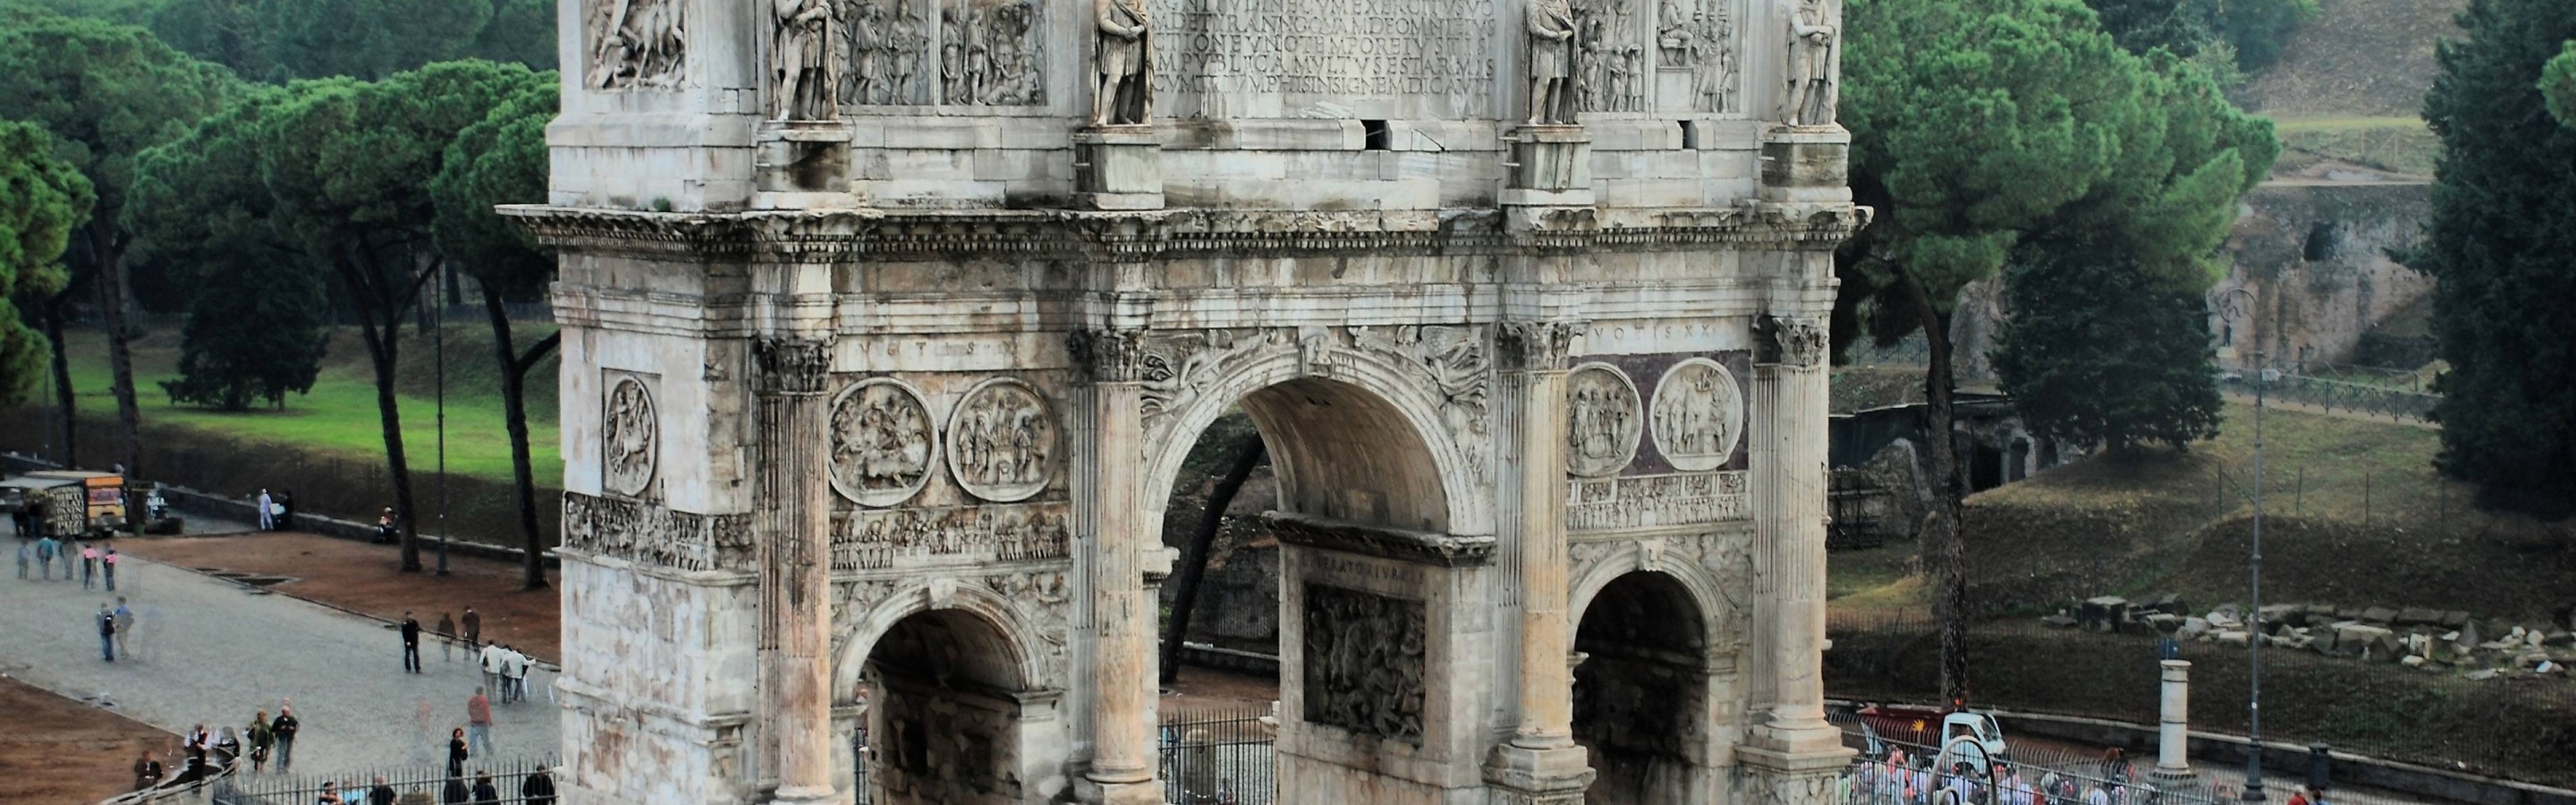 Arco de Constantino 2880x900